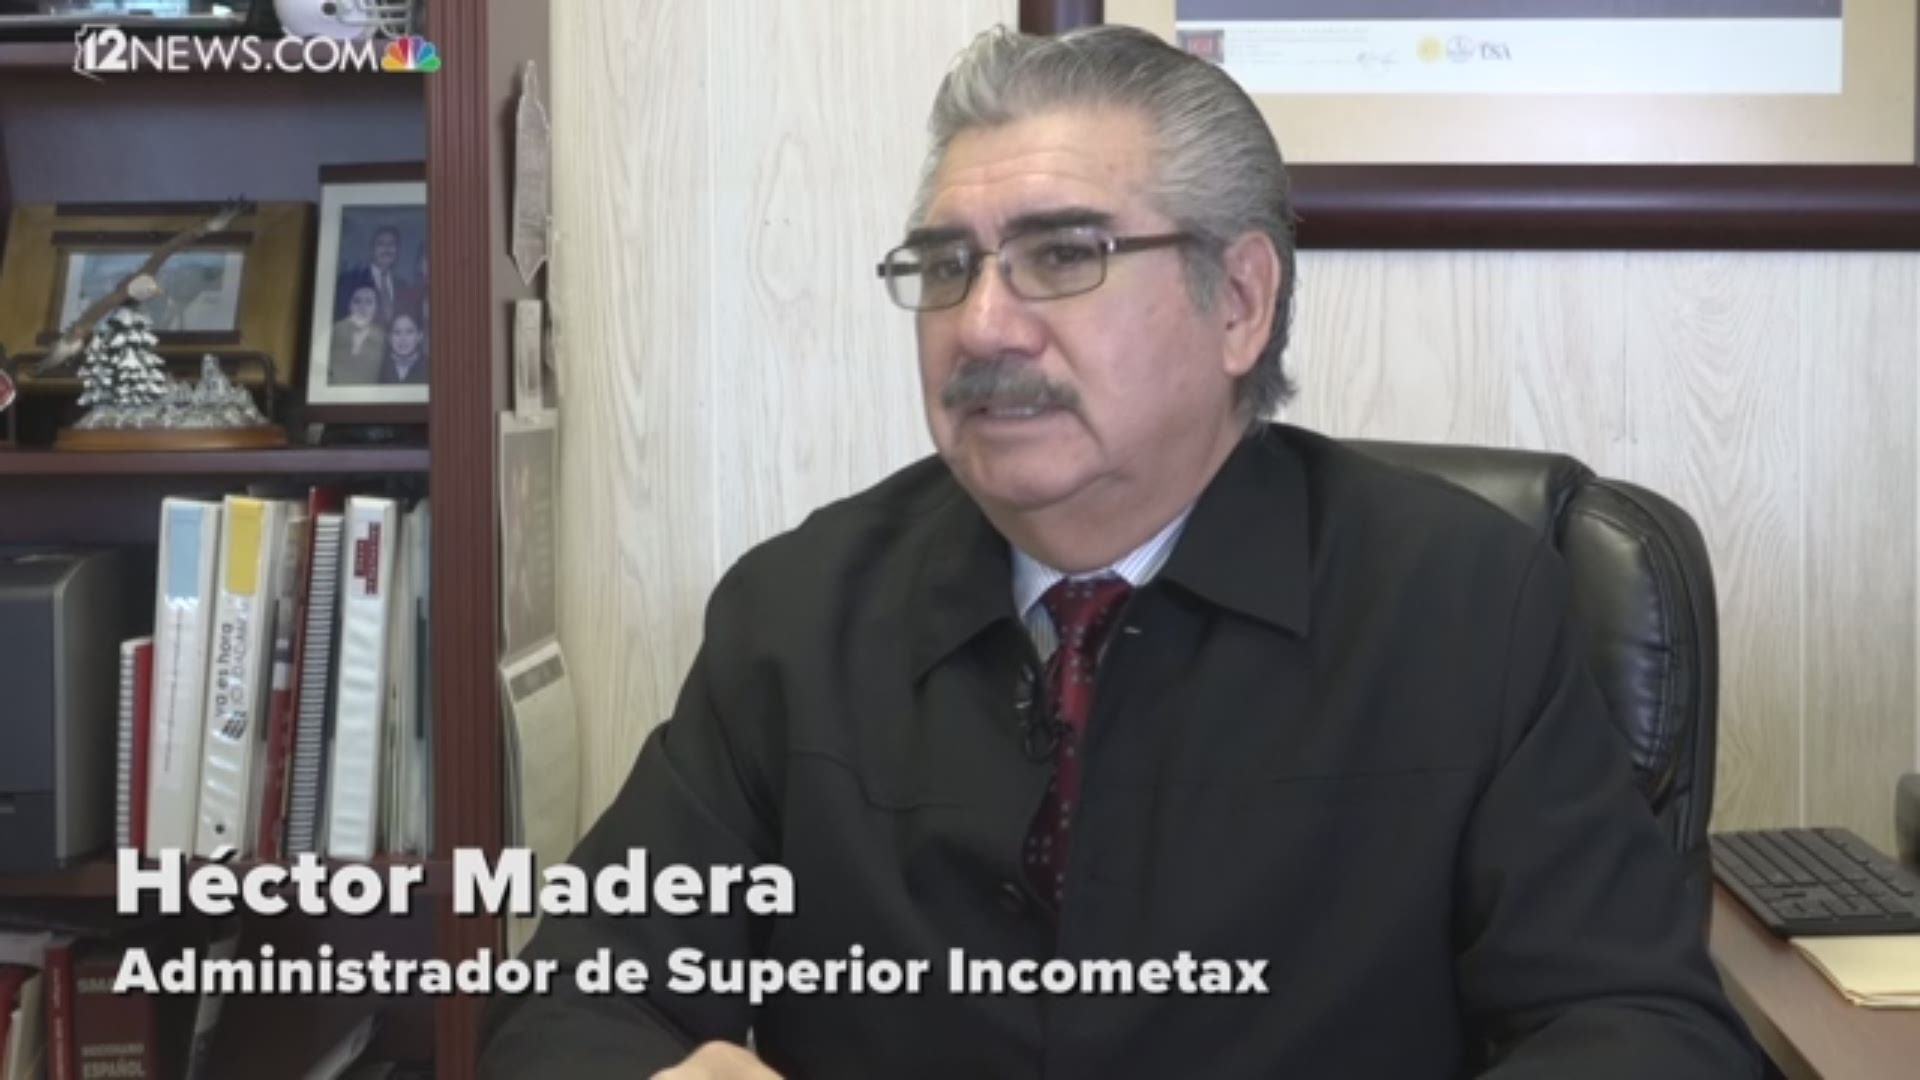 Héctor Madera de Superior Income Tax explica lo que califica para créditos en su declaración de impuestos y lo que califica como deducción estándar o detallada.